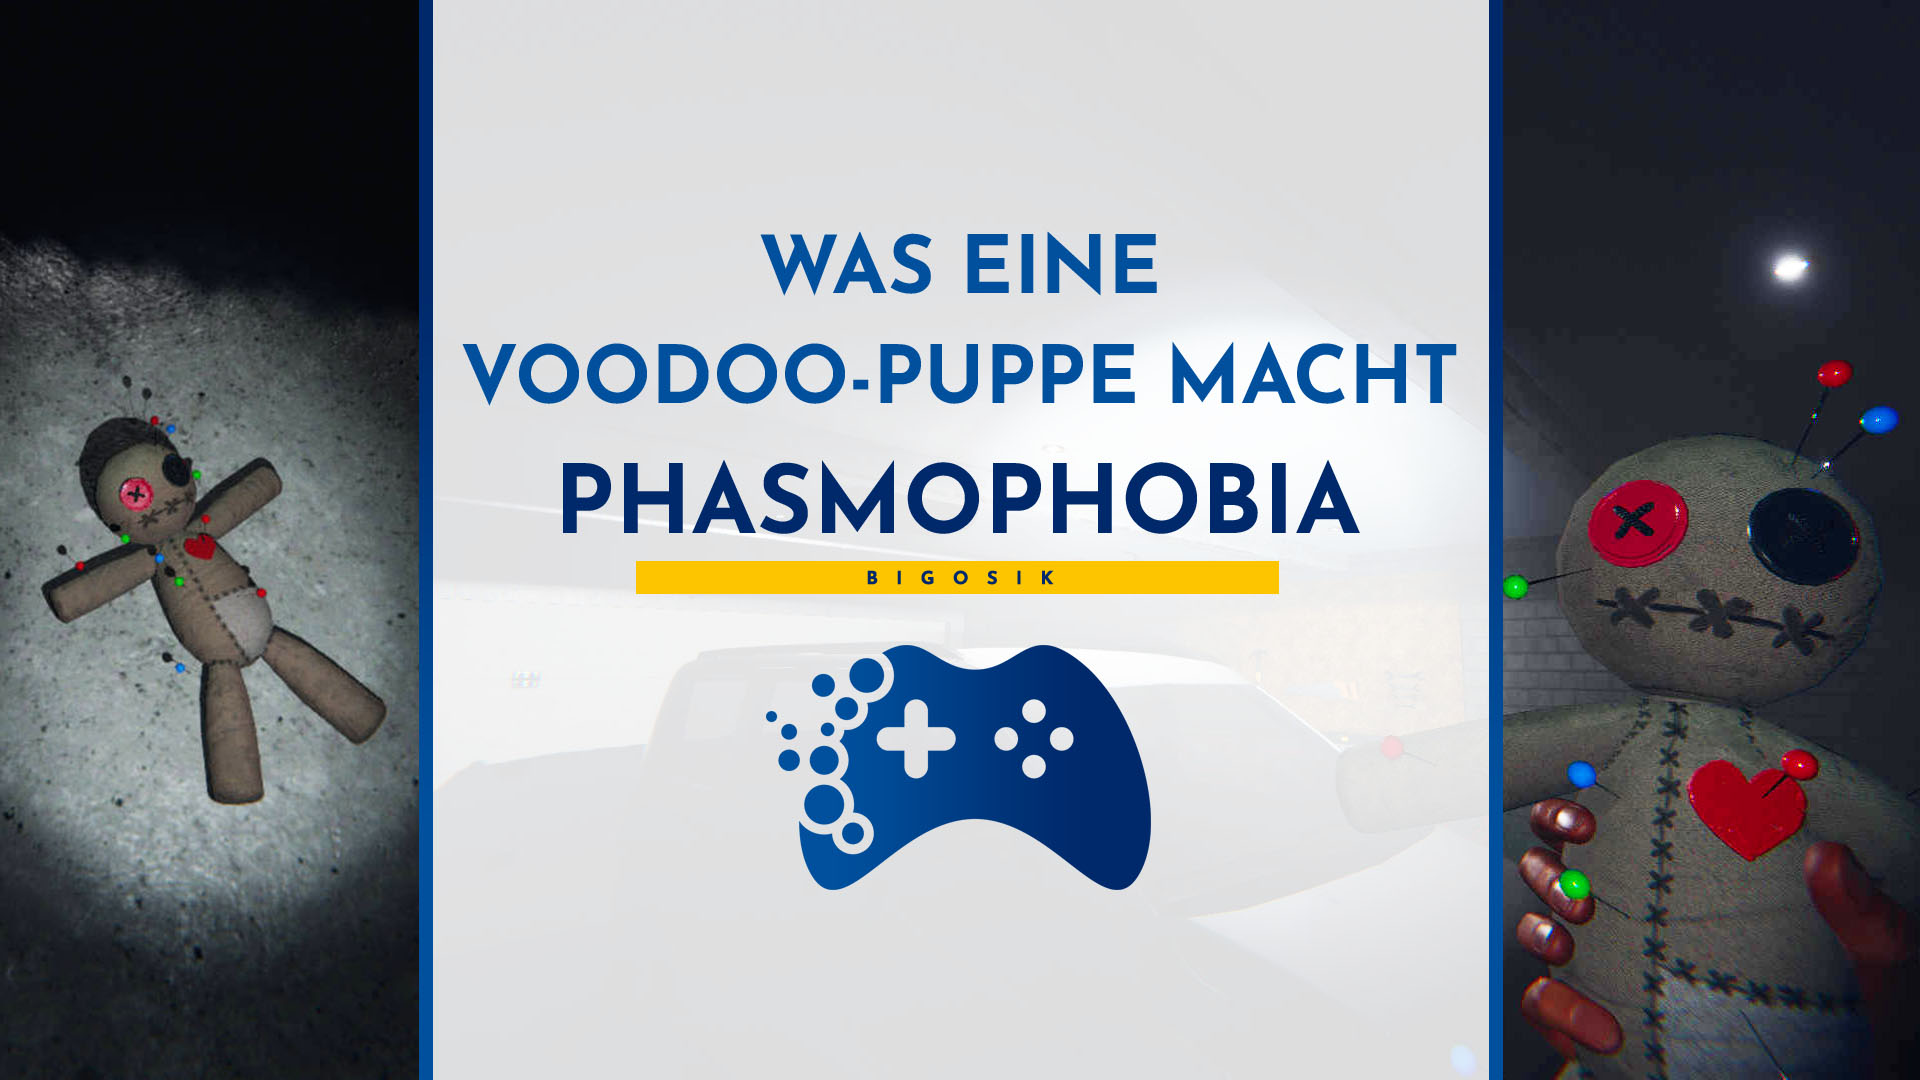 voodoo-puppe phasmophobie was bedeutet